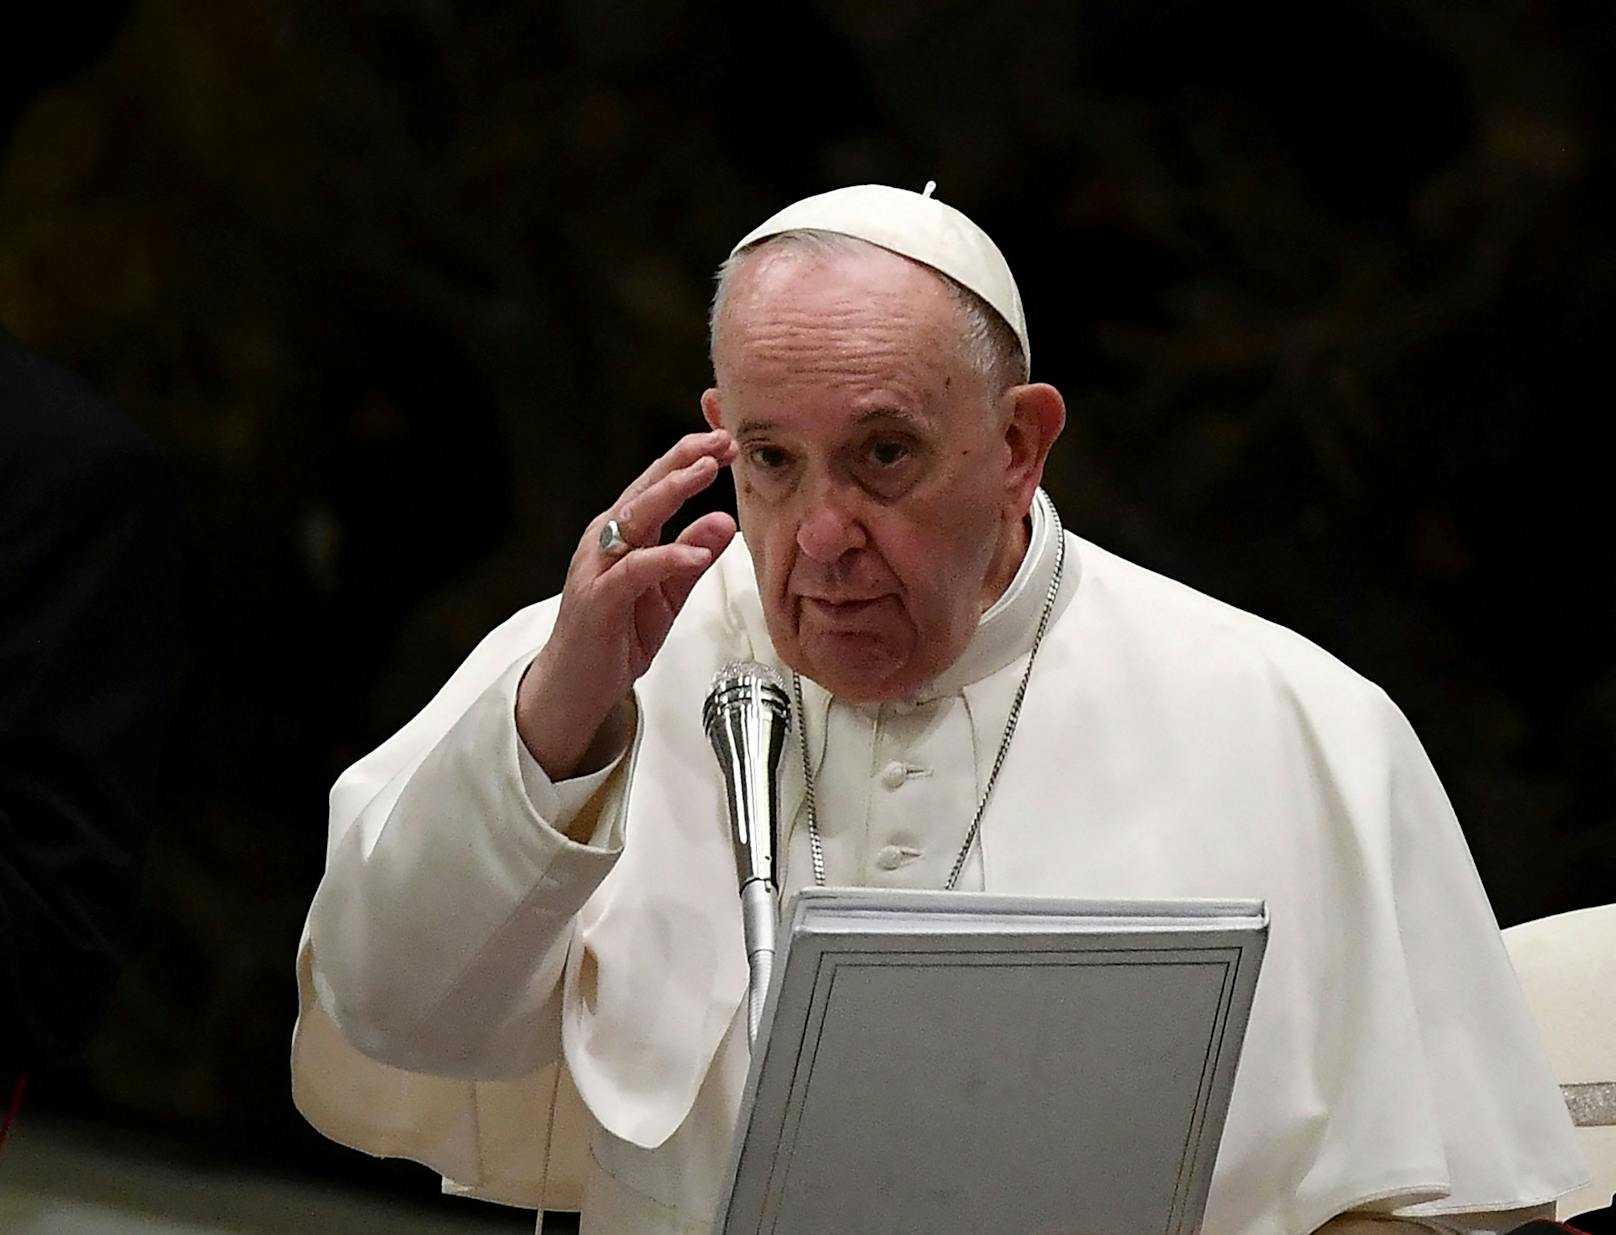 Homosexualität sei laut Papst Franziskus kein Verbrechen, jedoch sehr wohl eine Sünde.